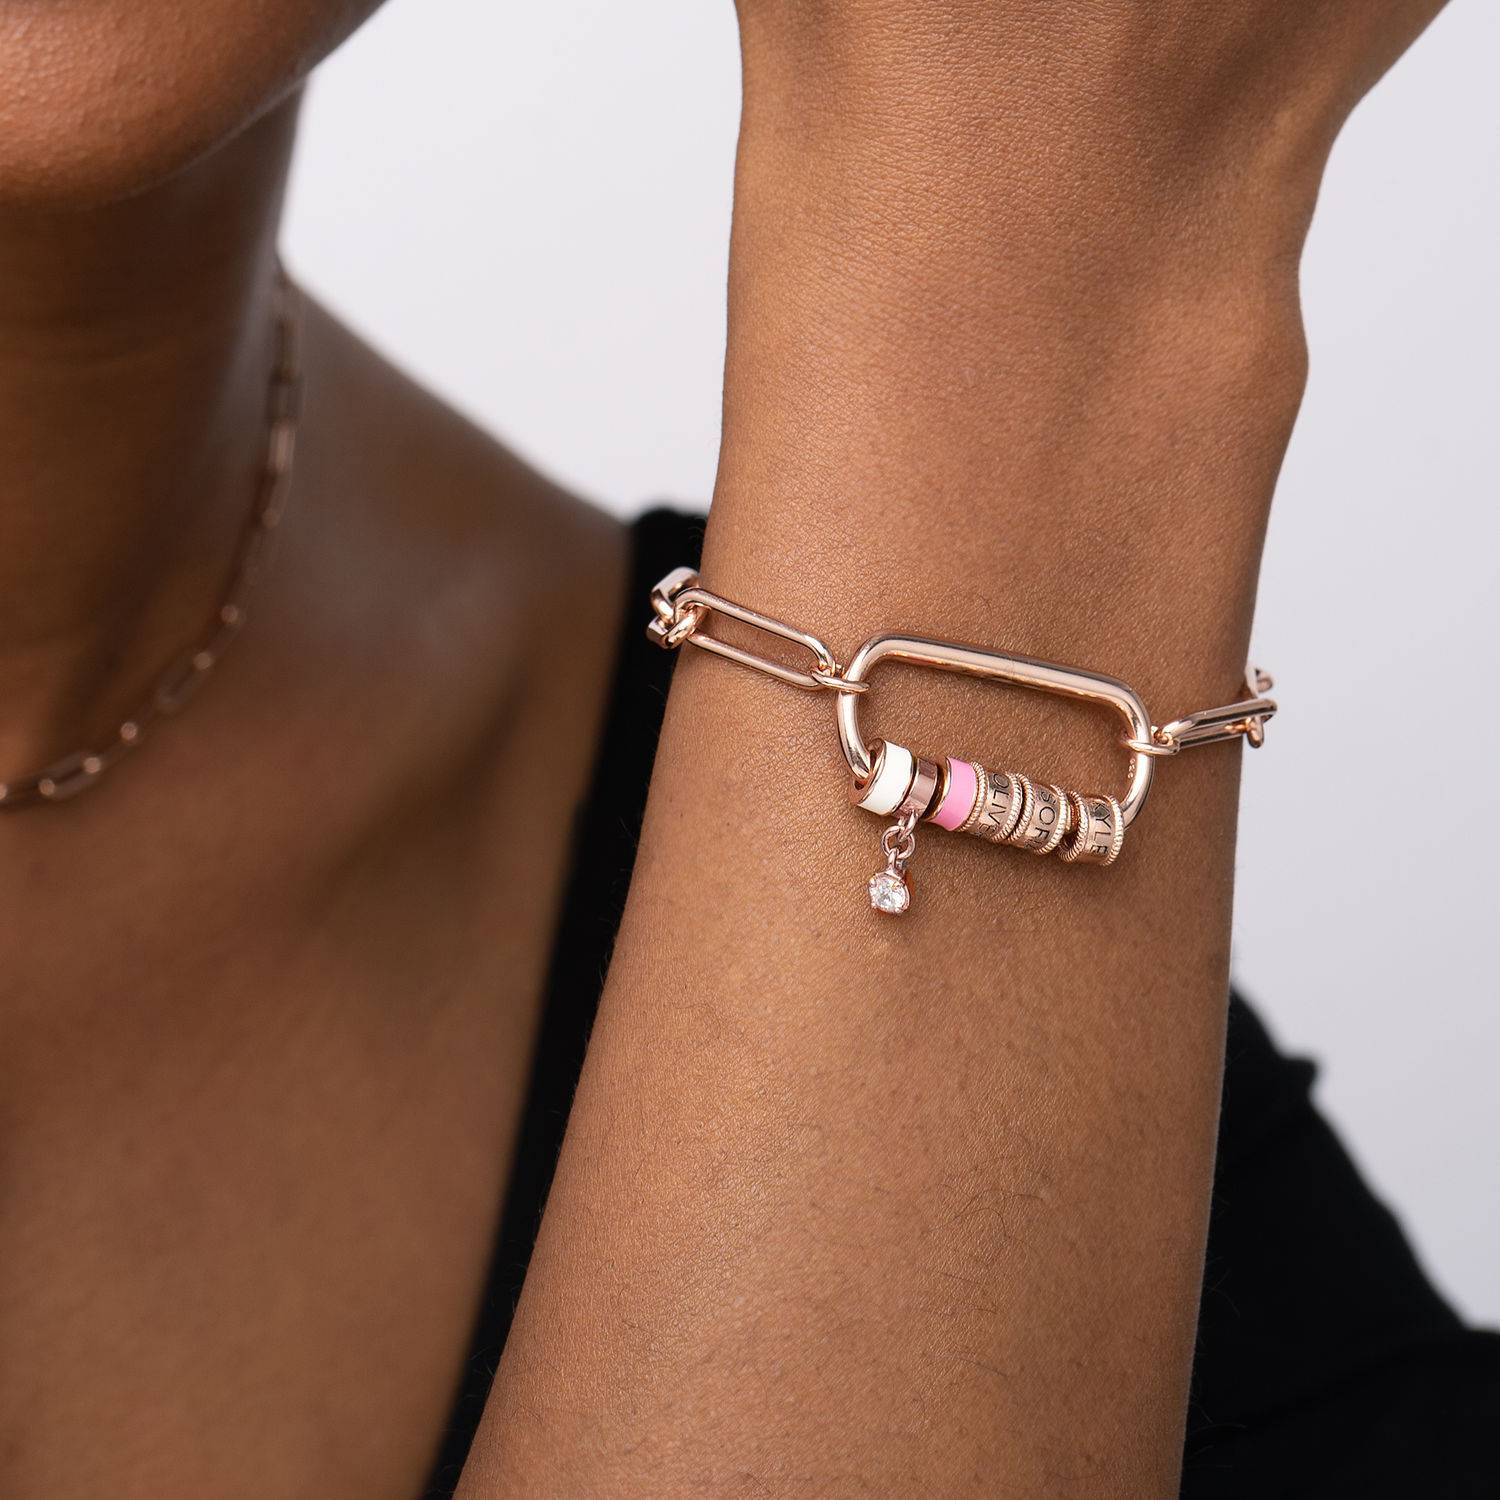 Linda-armband i 18K roséguldplätering med ovalt spänne och diamant-1 produktbilder